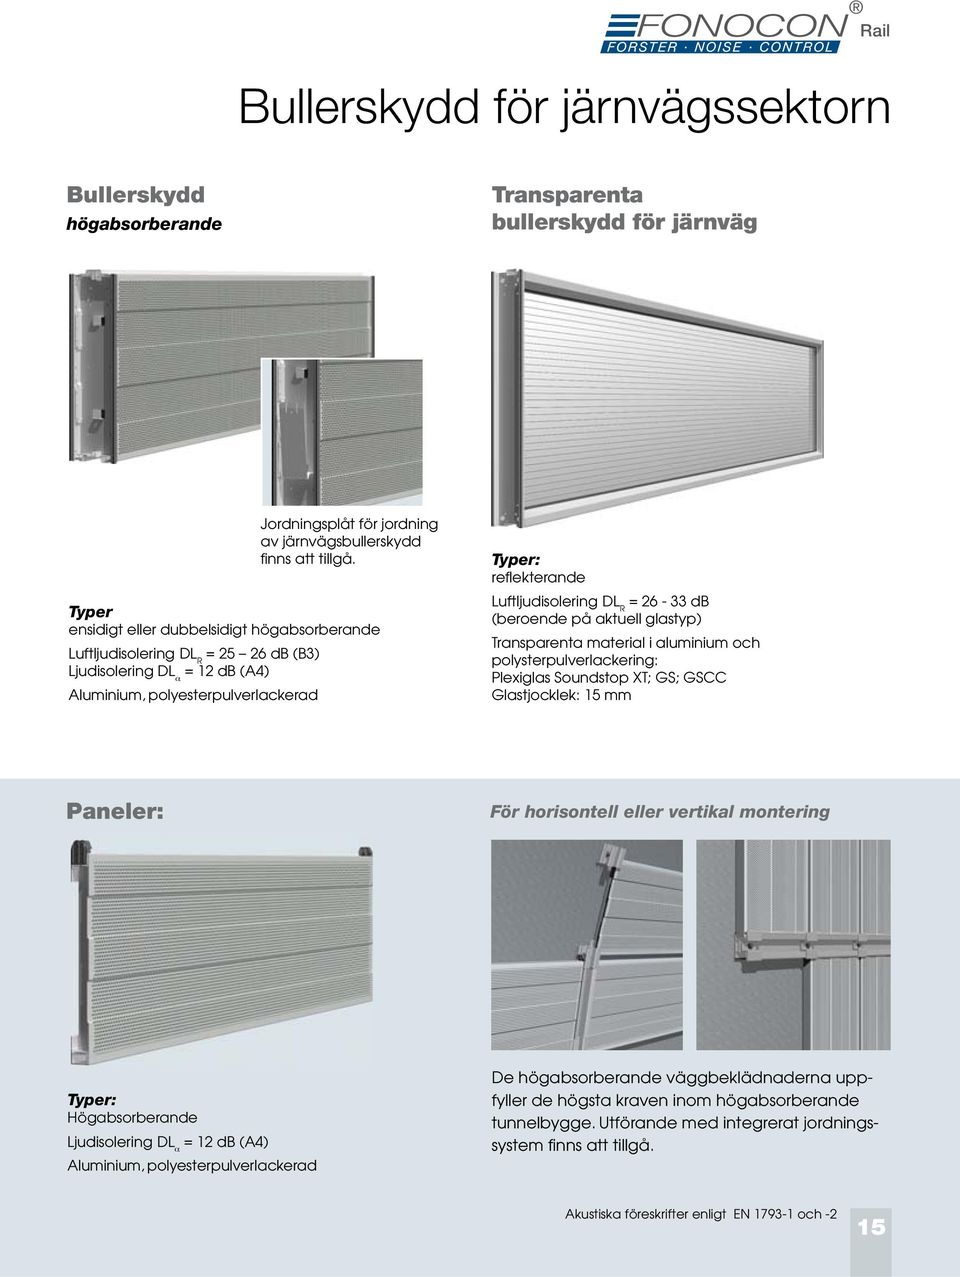 R = 26-33 db (beroende på aktuell glastyp) Transparenta material i aluminium och polysterpulverlackering: Plexiglas Soundstop XT; GS; GSCC Glastjocklek: 15 mm Paneler: För horisontell eller vertikal